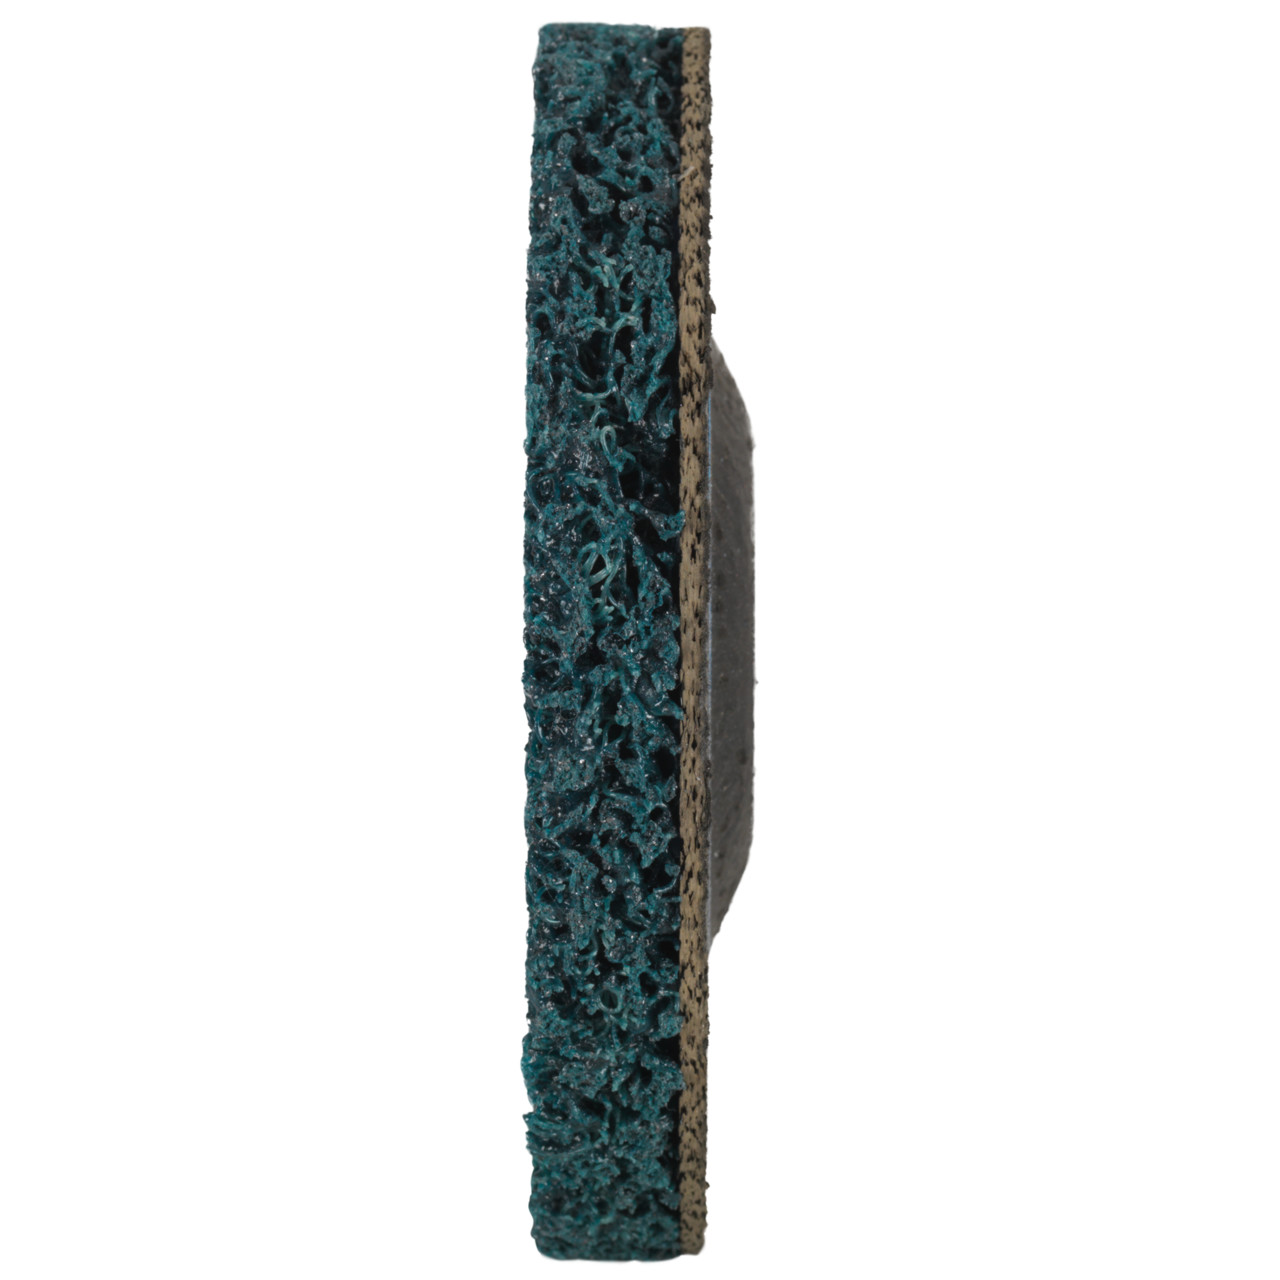 Tyrolit Disque de nettoyage grossier DxH 125x22,2 Utilisation universelle, C GROB, forme : 28- (disque de nettoyage grossier), art. 898017